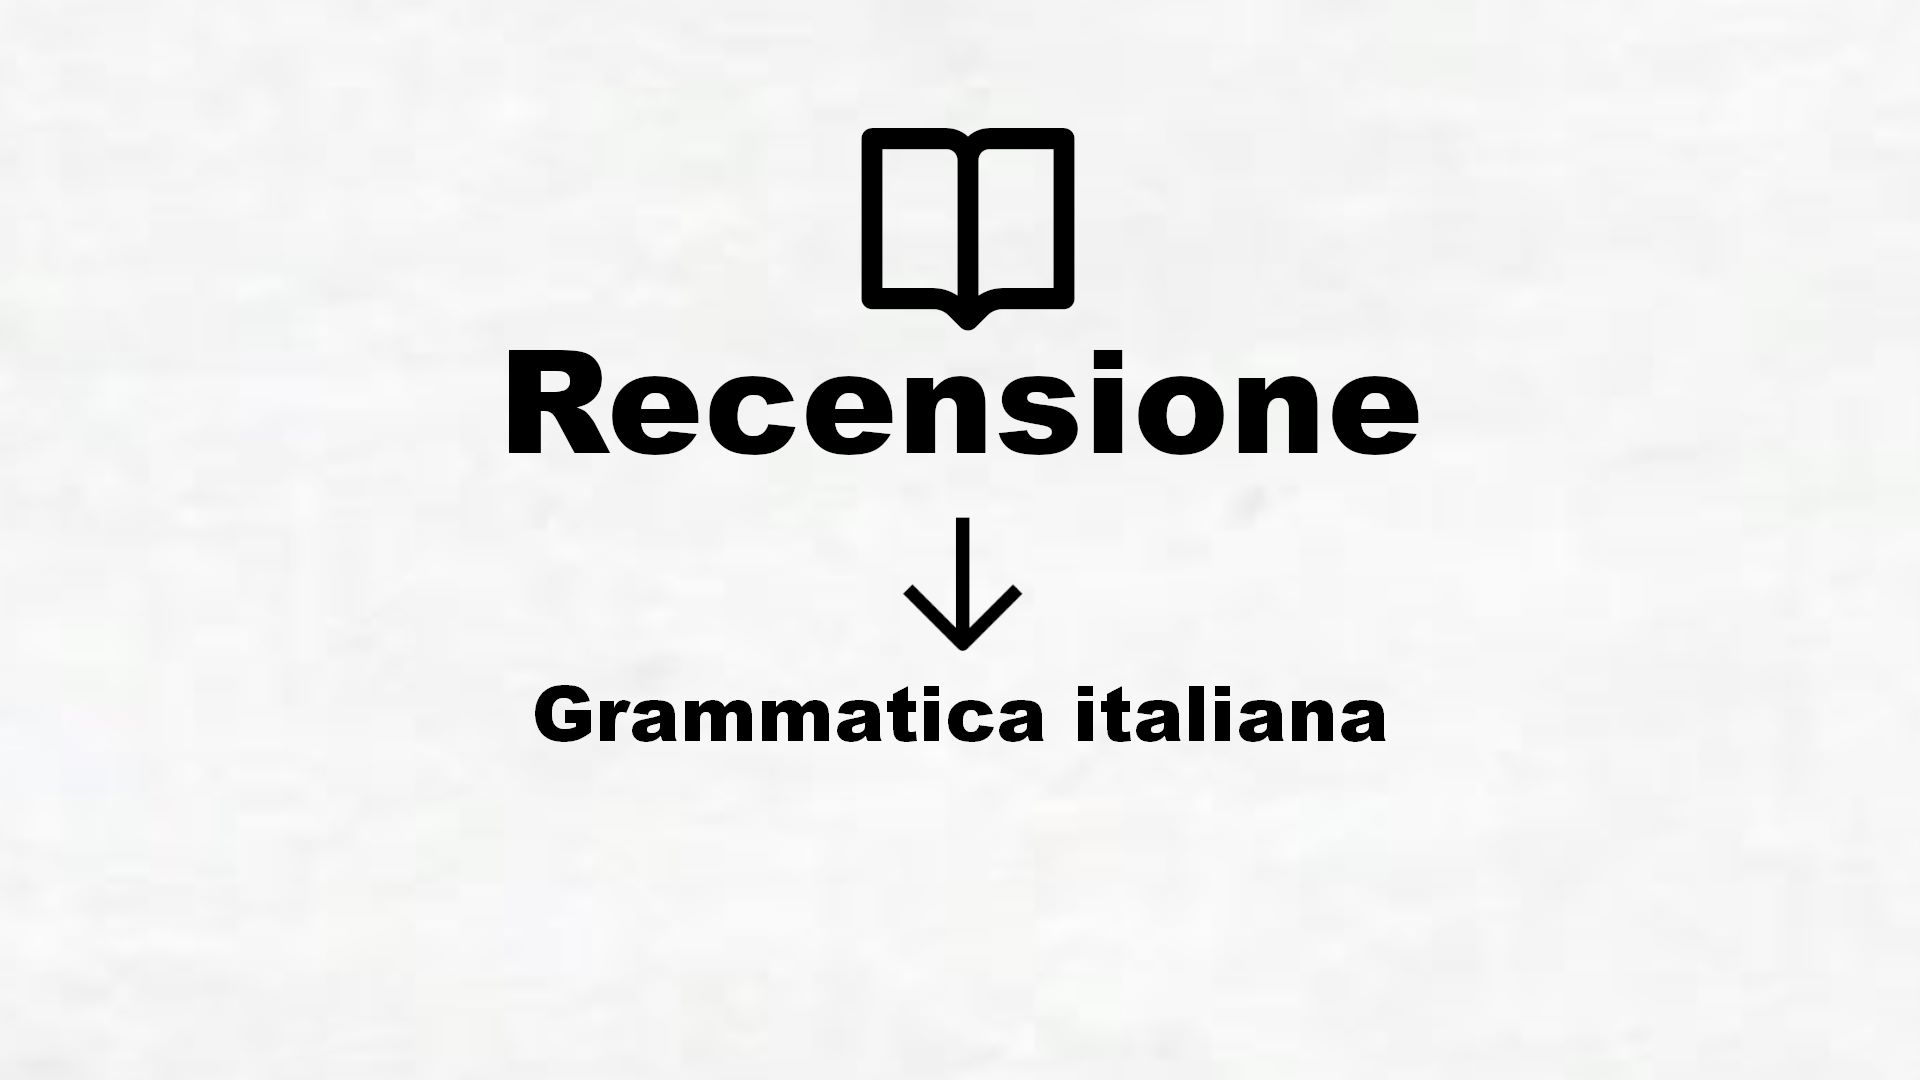 Grammatica italiana – Recensione Libro